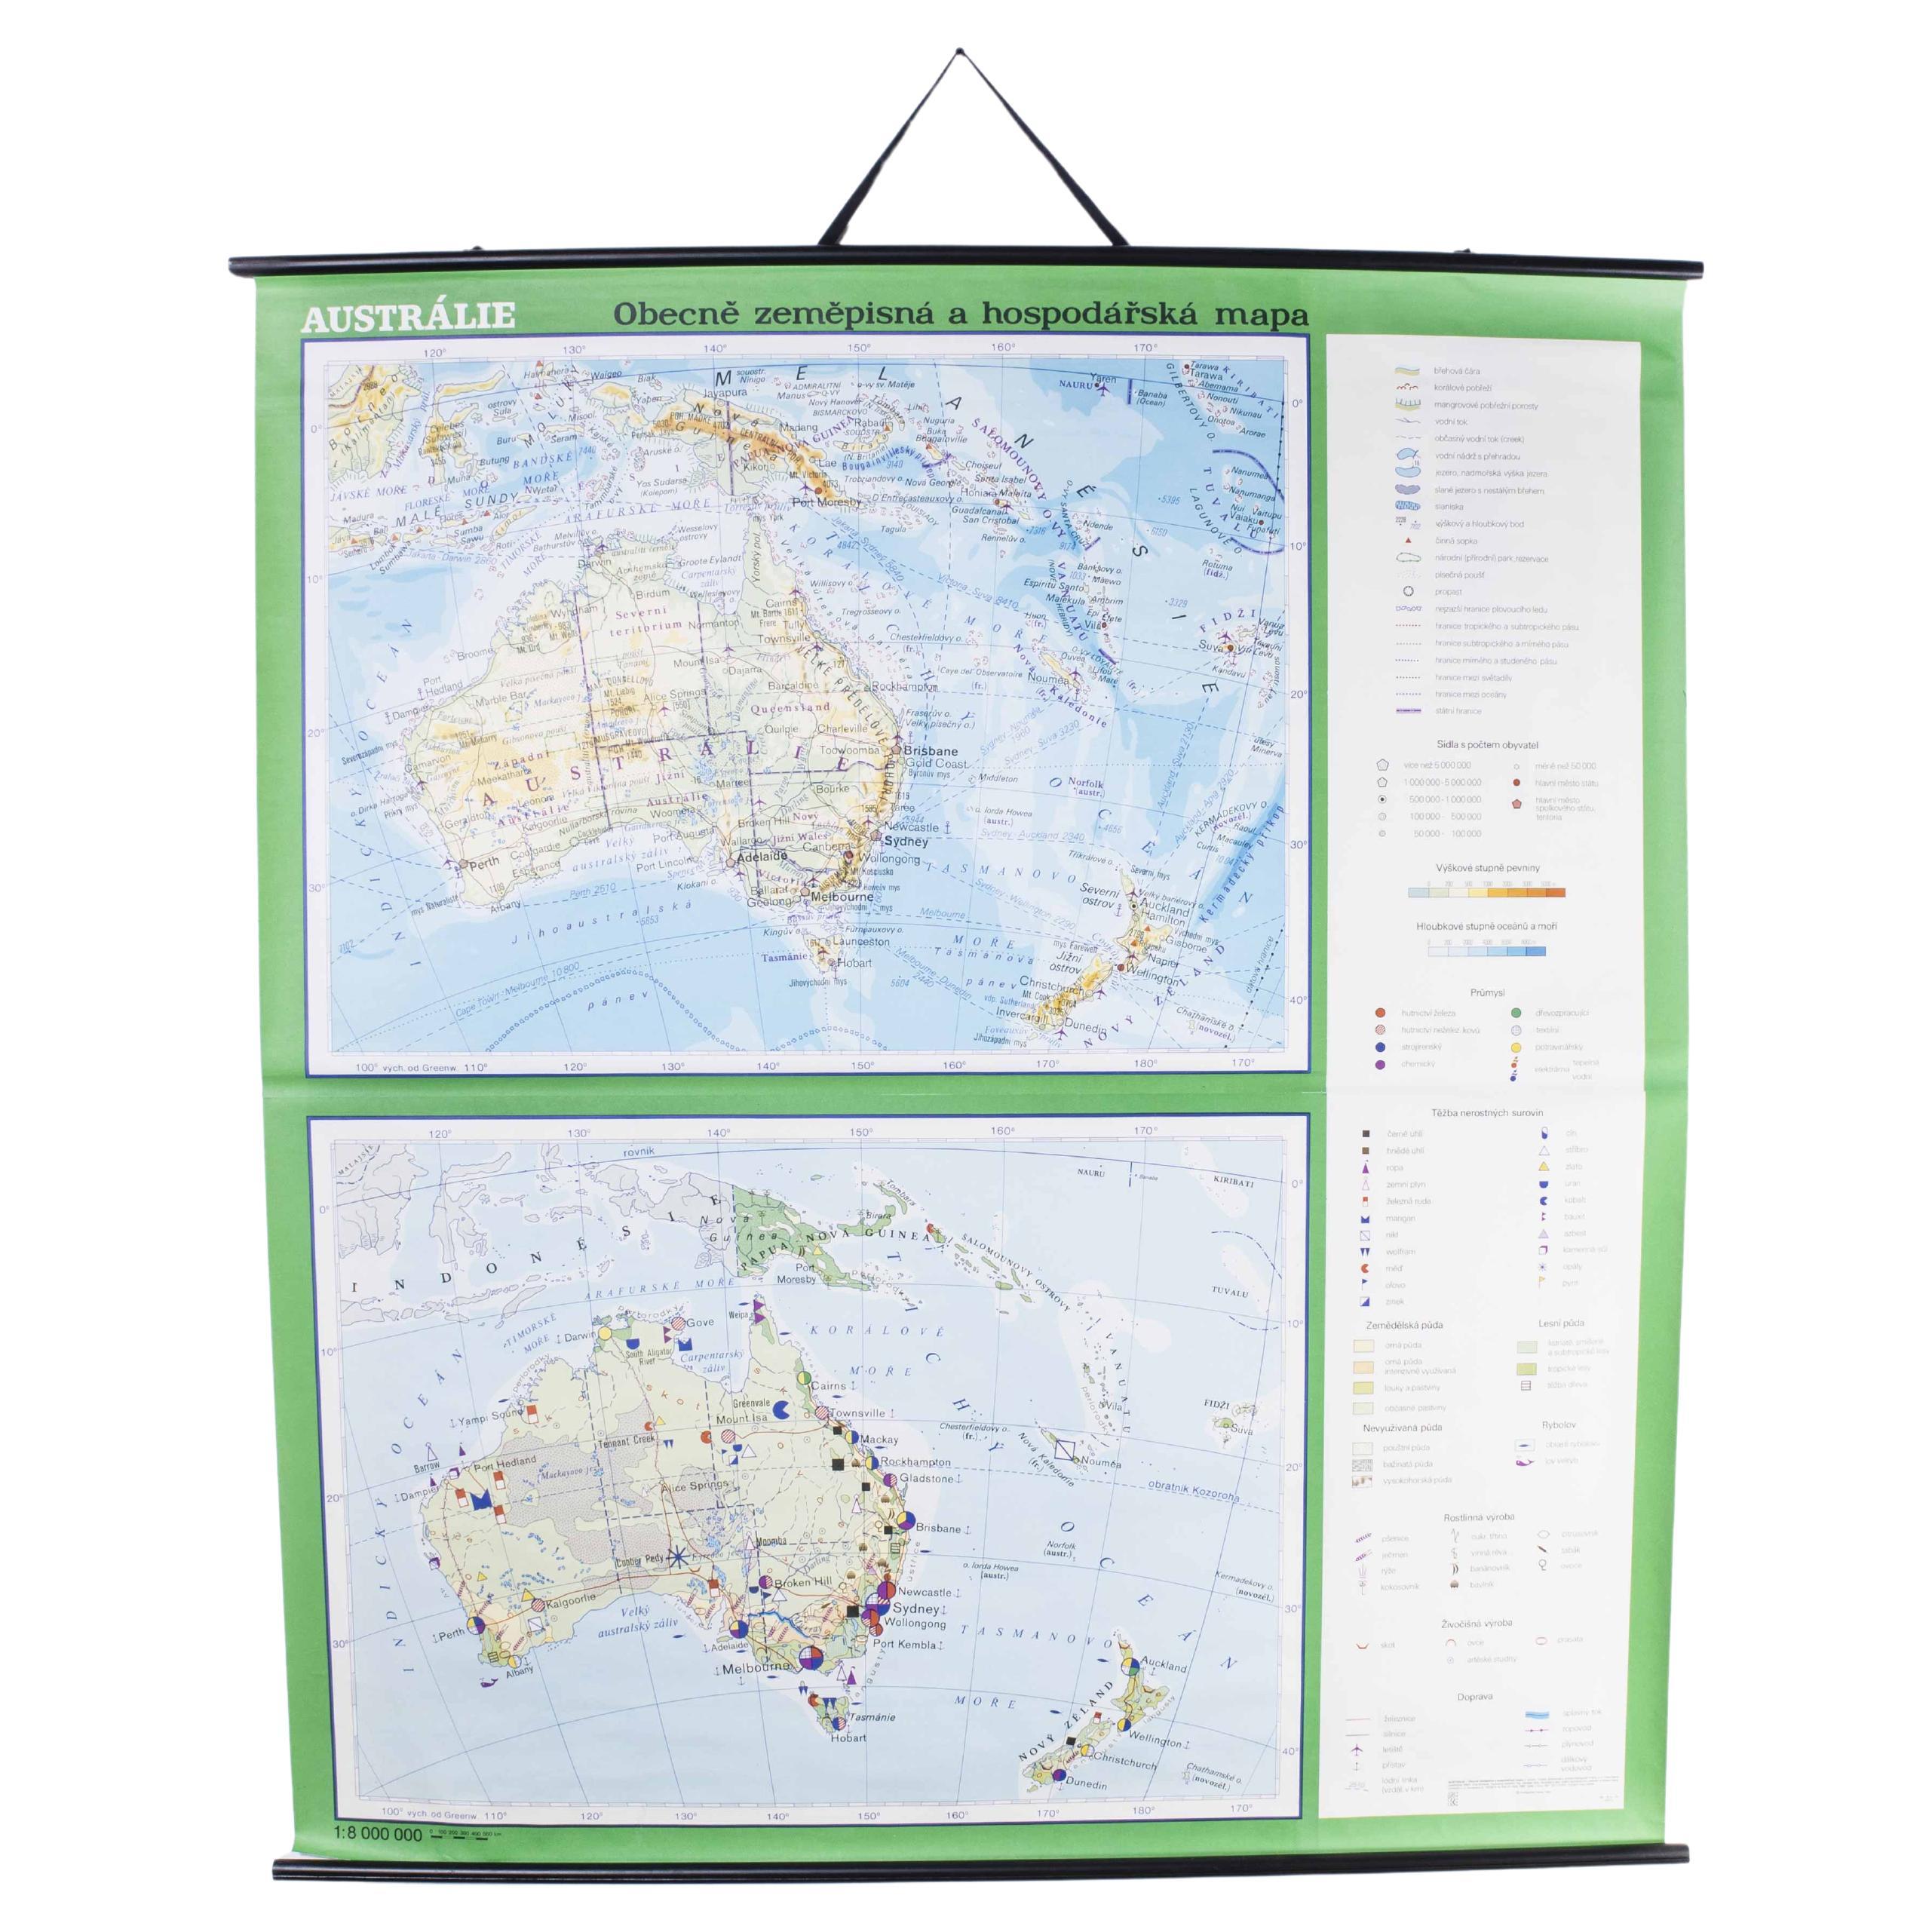 Educational Geographic Map des späten 20. Jahrhunderts – Australien Topographie und Wirtschaft